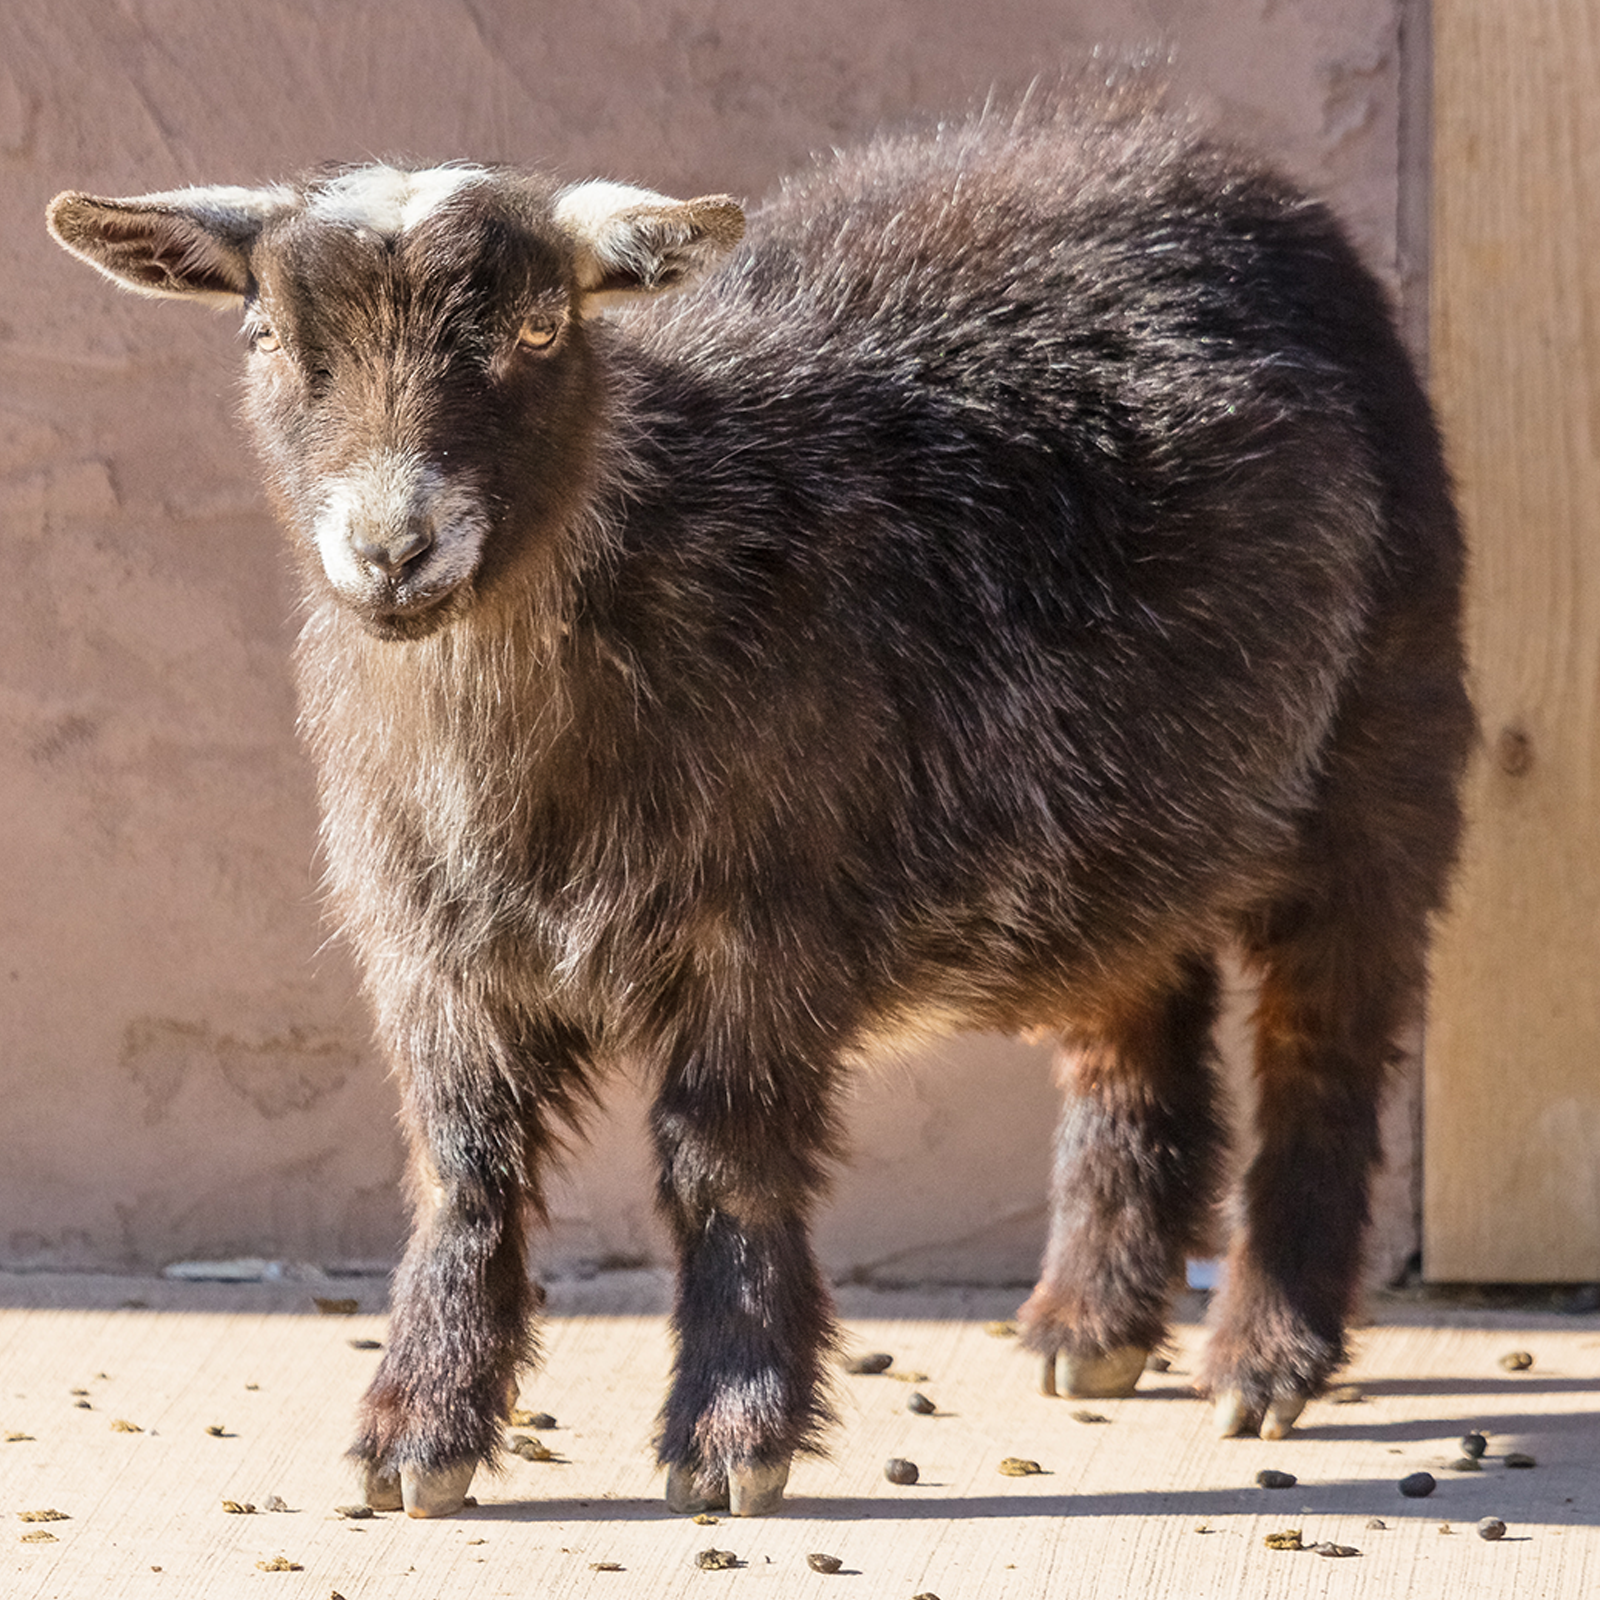 Pygmy Goat - Description, Habitat, Image, Diet, and Interesting Facts